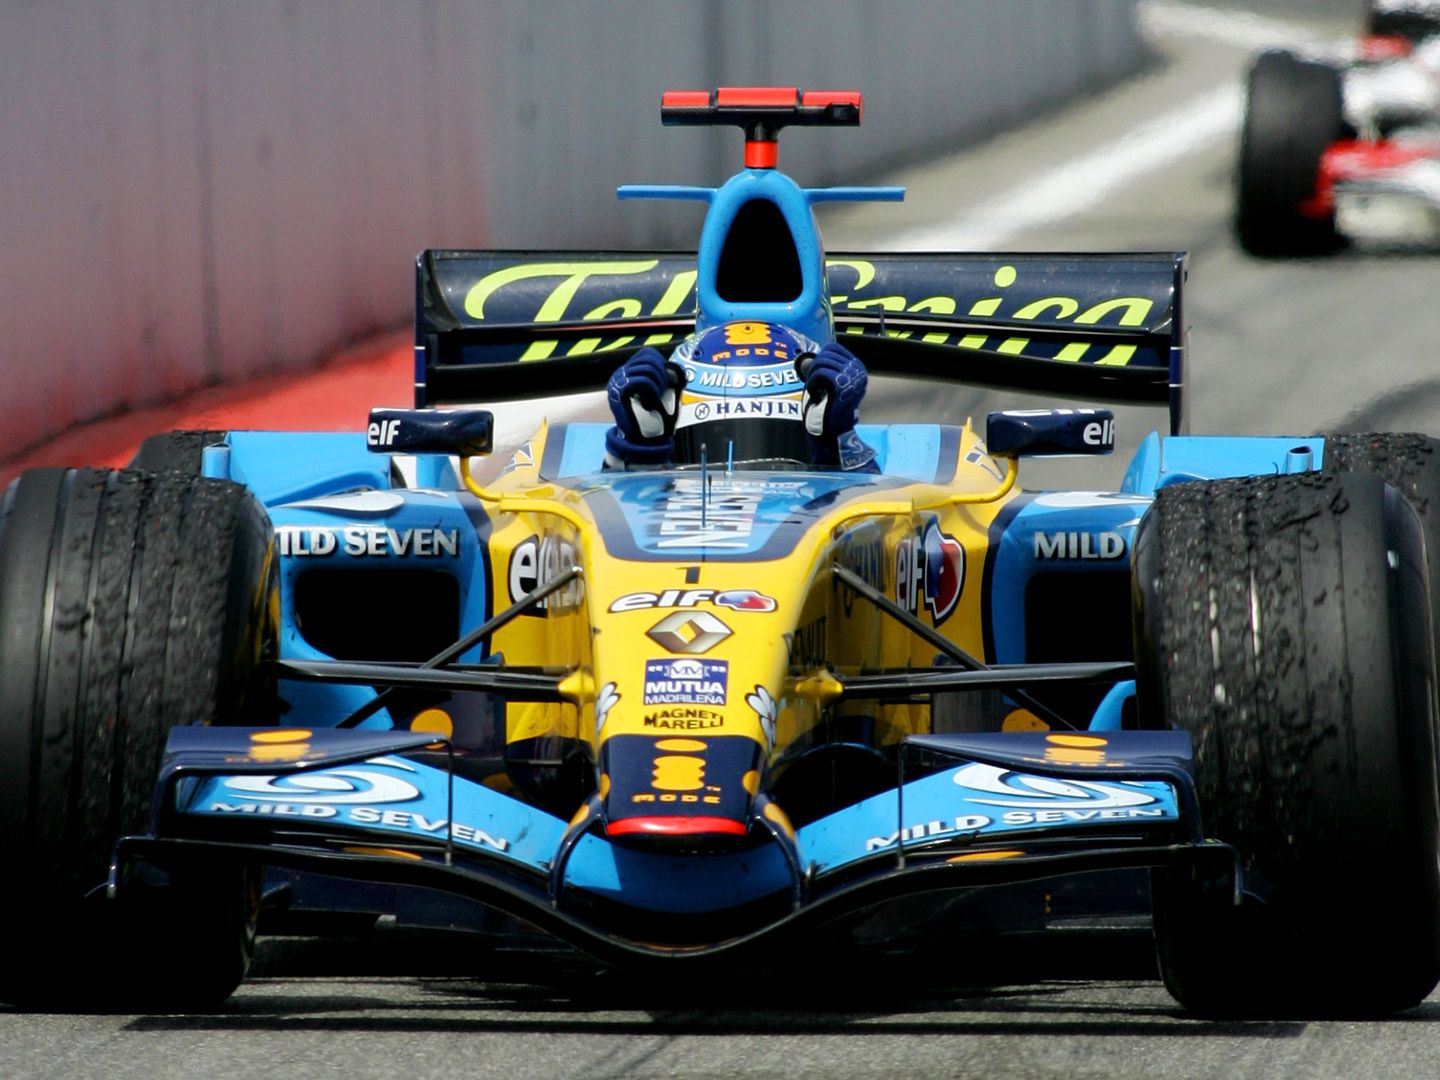 Con la llegada de los nuevos Bridgestone como neumático único, Alonso tuvo que adaptar su estilo de pilotaje, a diferencia de Hamilton